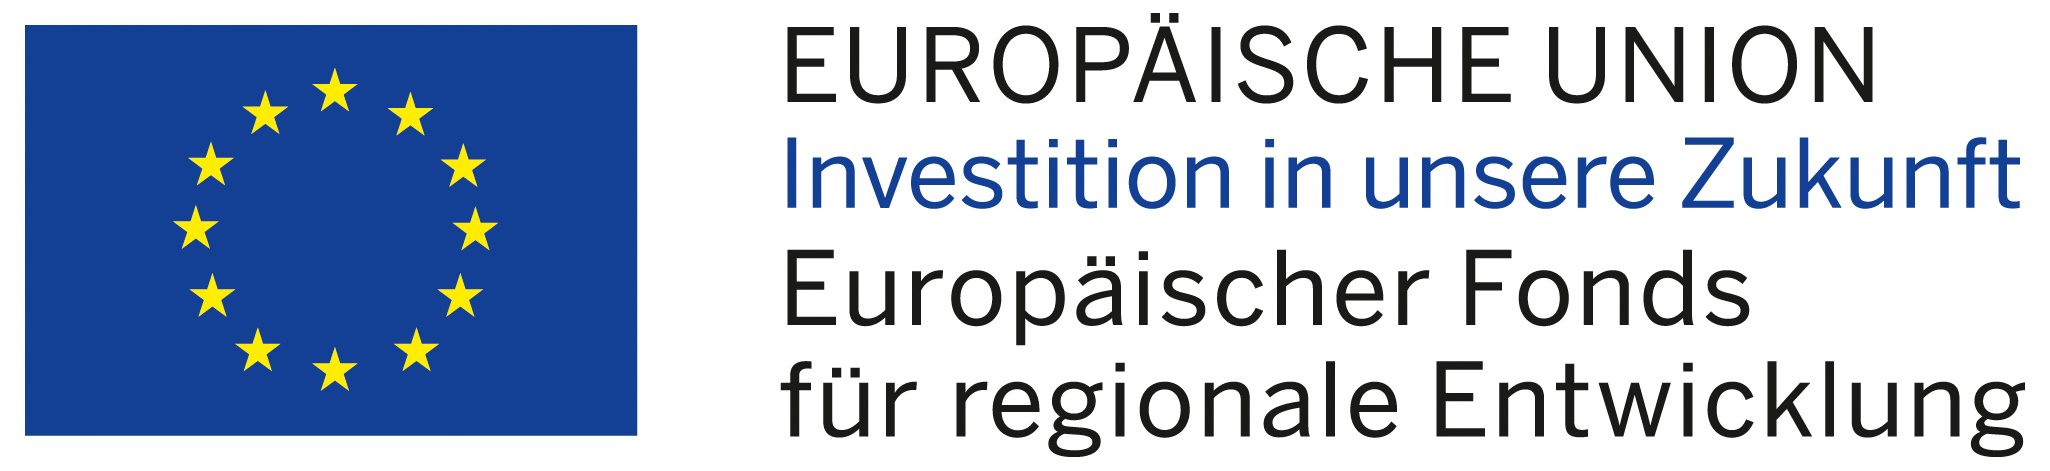 EU-Emblem Europäische Union Investition in die Zukunft